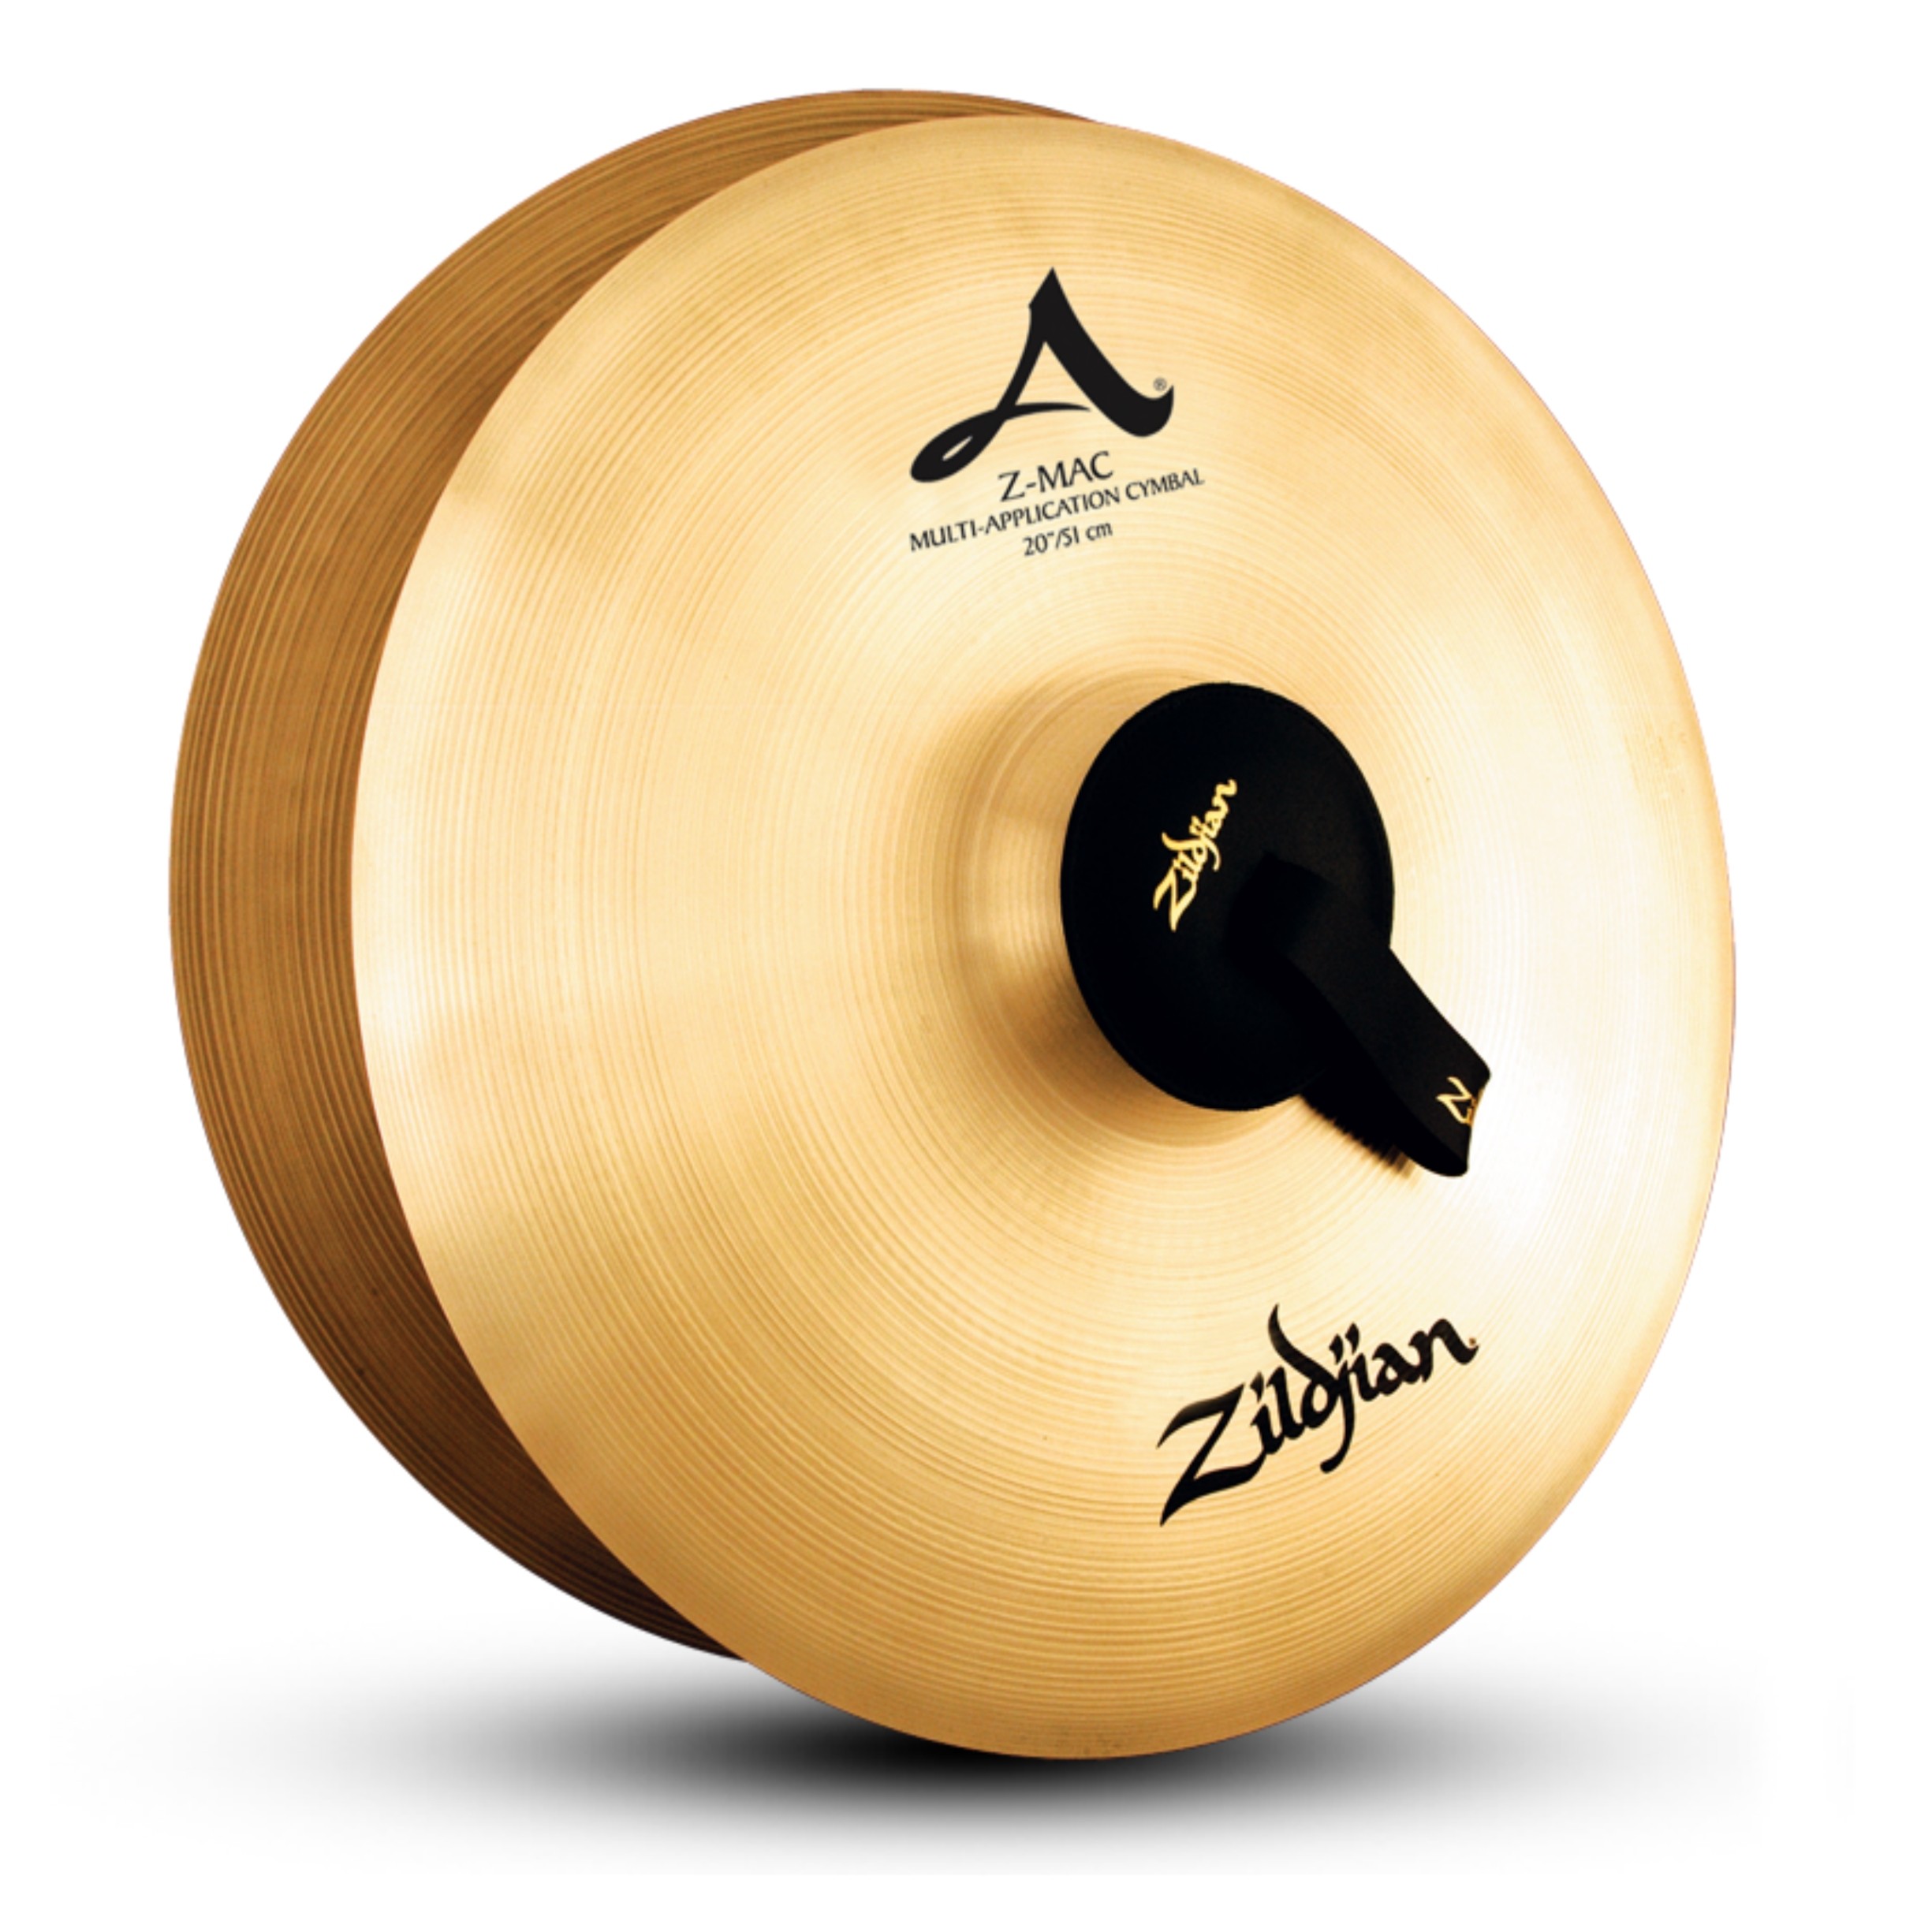 Zildjian 20" Z-MAC Cymbals